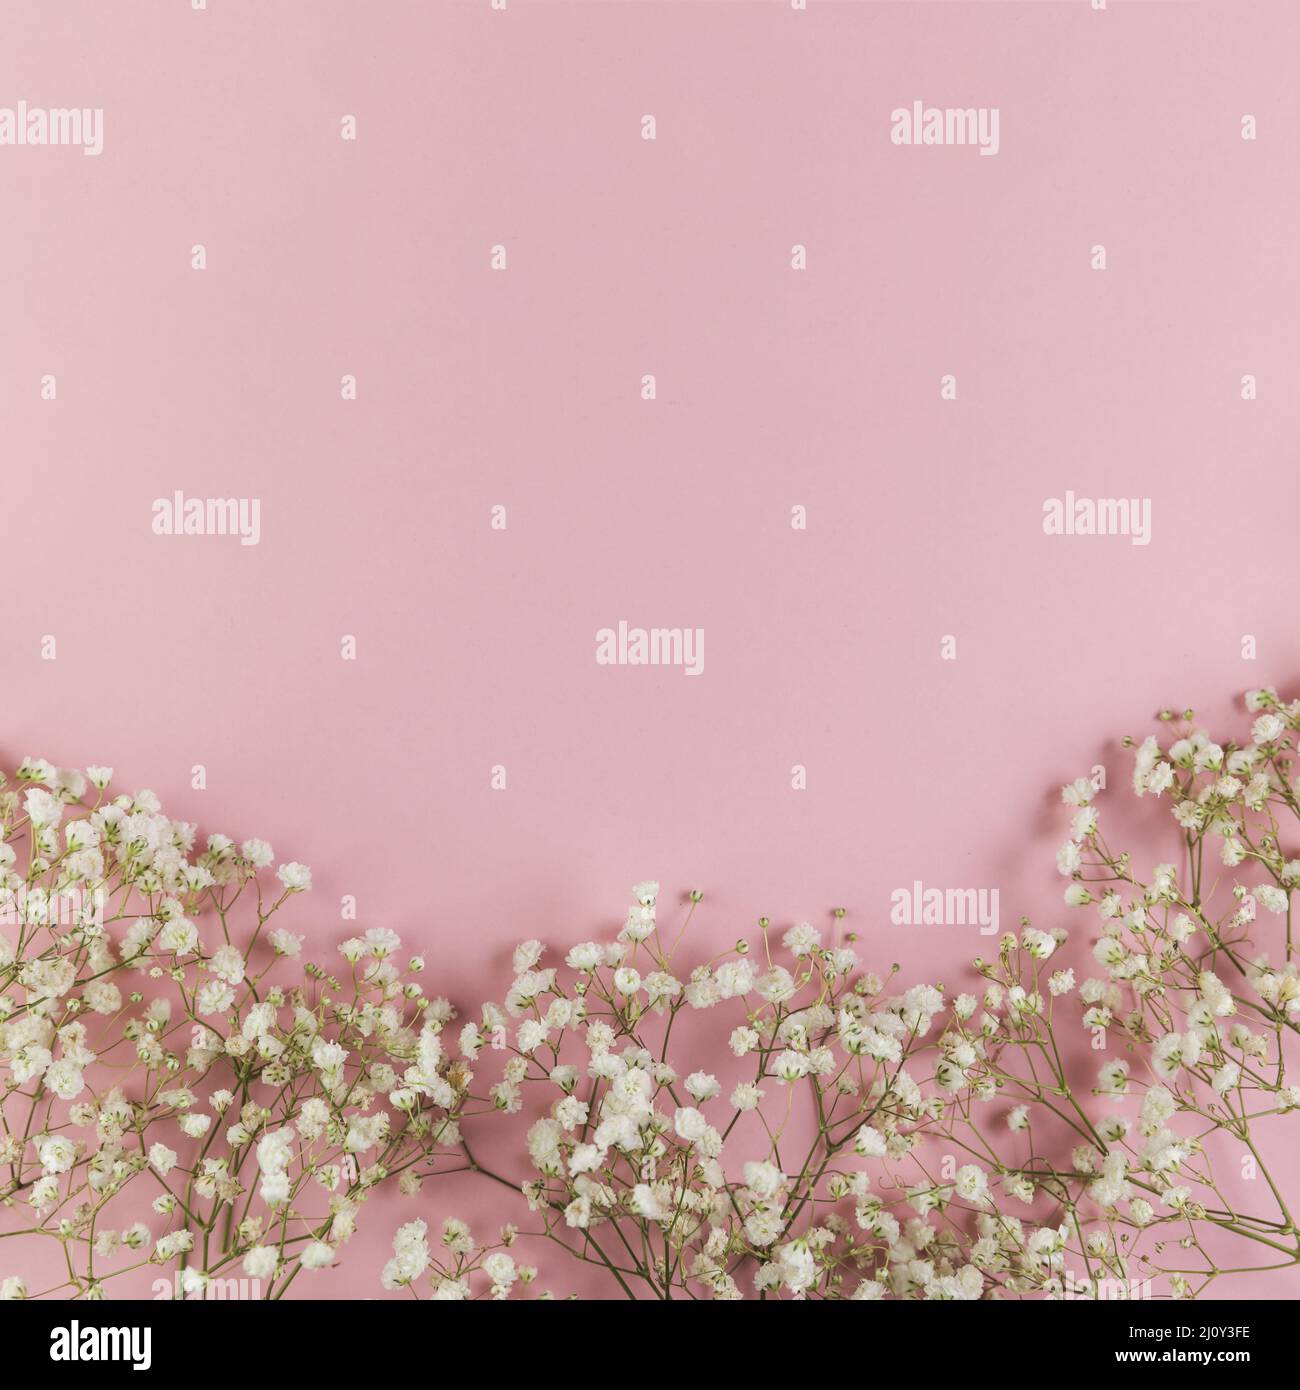 Blanc frais bébé souffle fleurs sur fond rose. Photo de haute qualité Banque D'Images